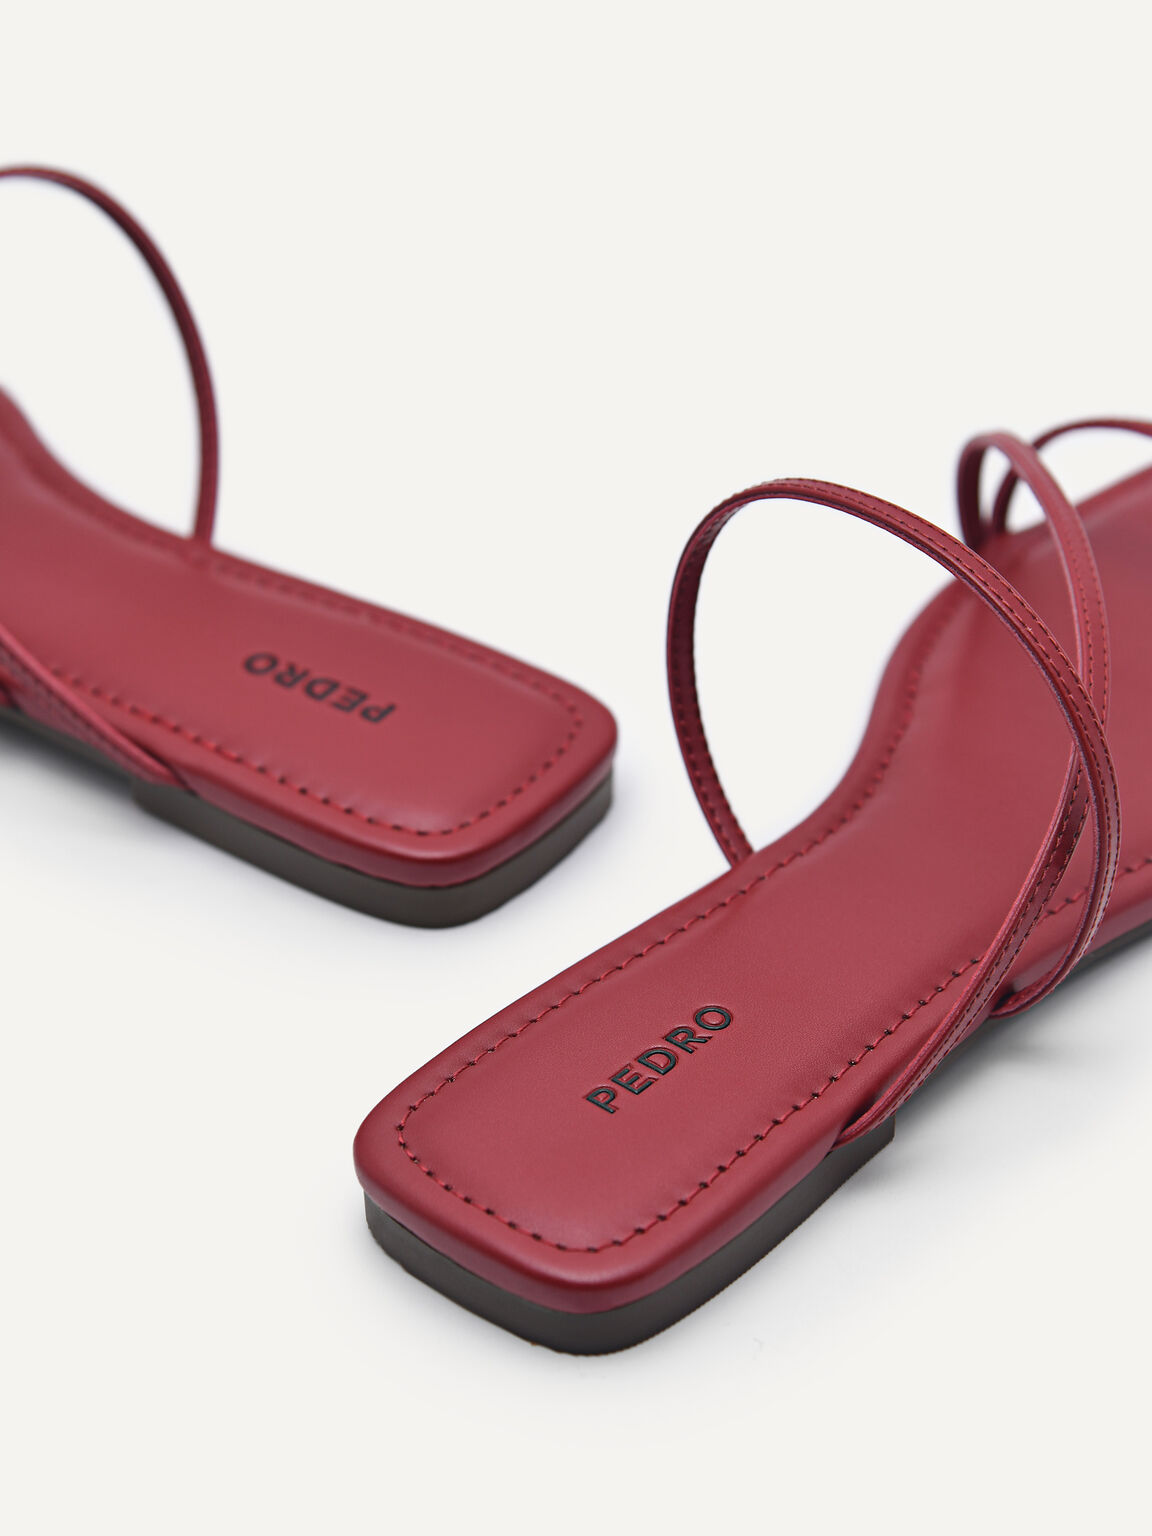 Gwyneth Strappy Sandals, Red